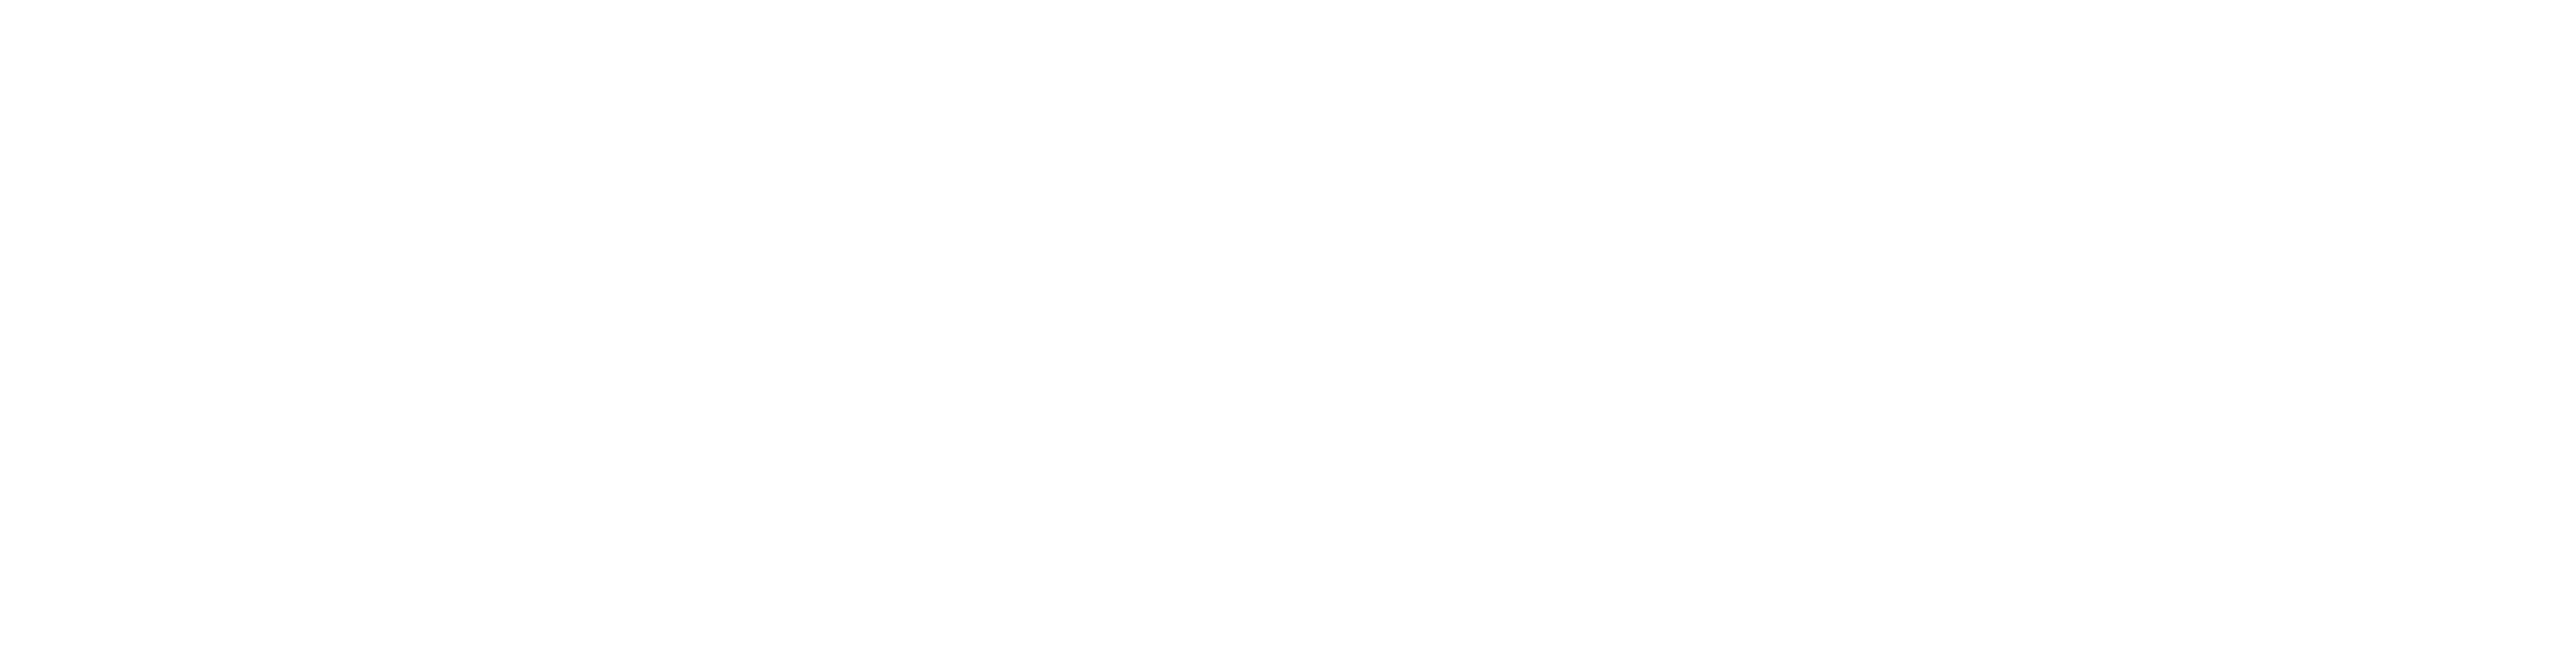 E.G LIFE TOP TEXT